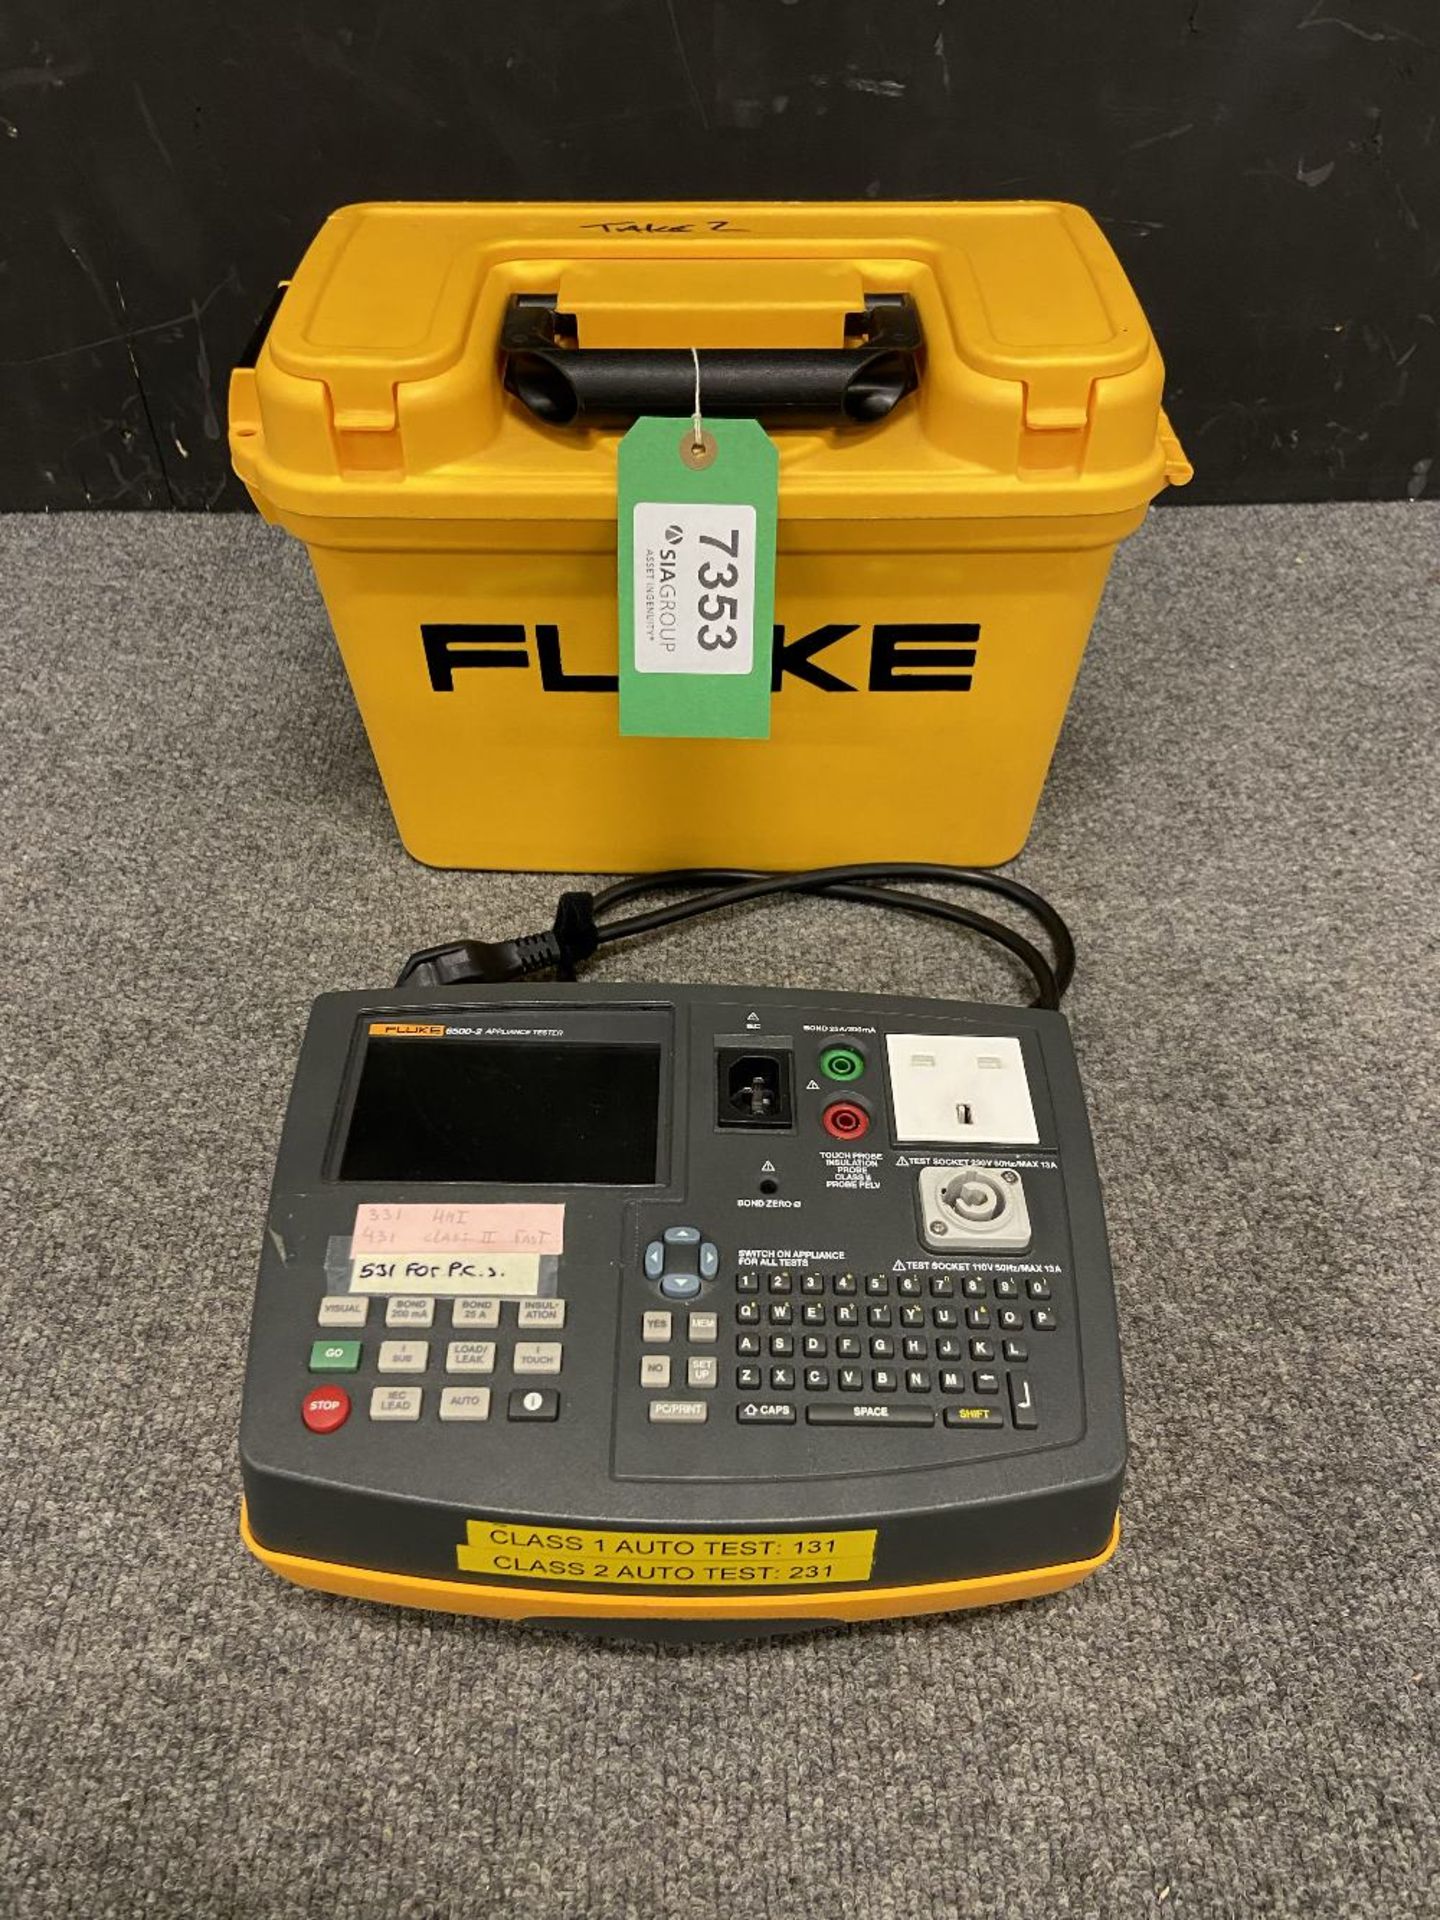 Fluke 6500-2 UK Portabler Appliance Tester in Carry Case